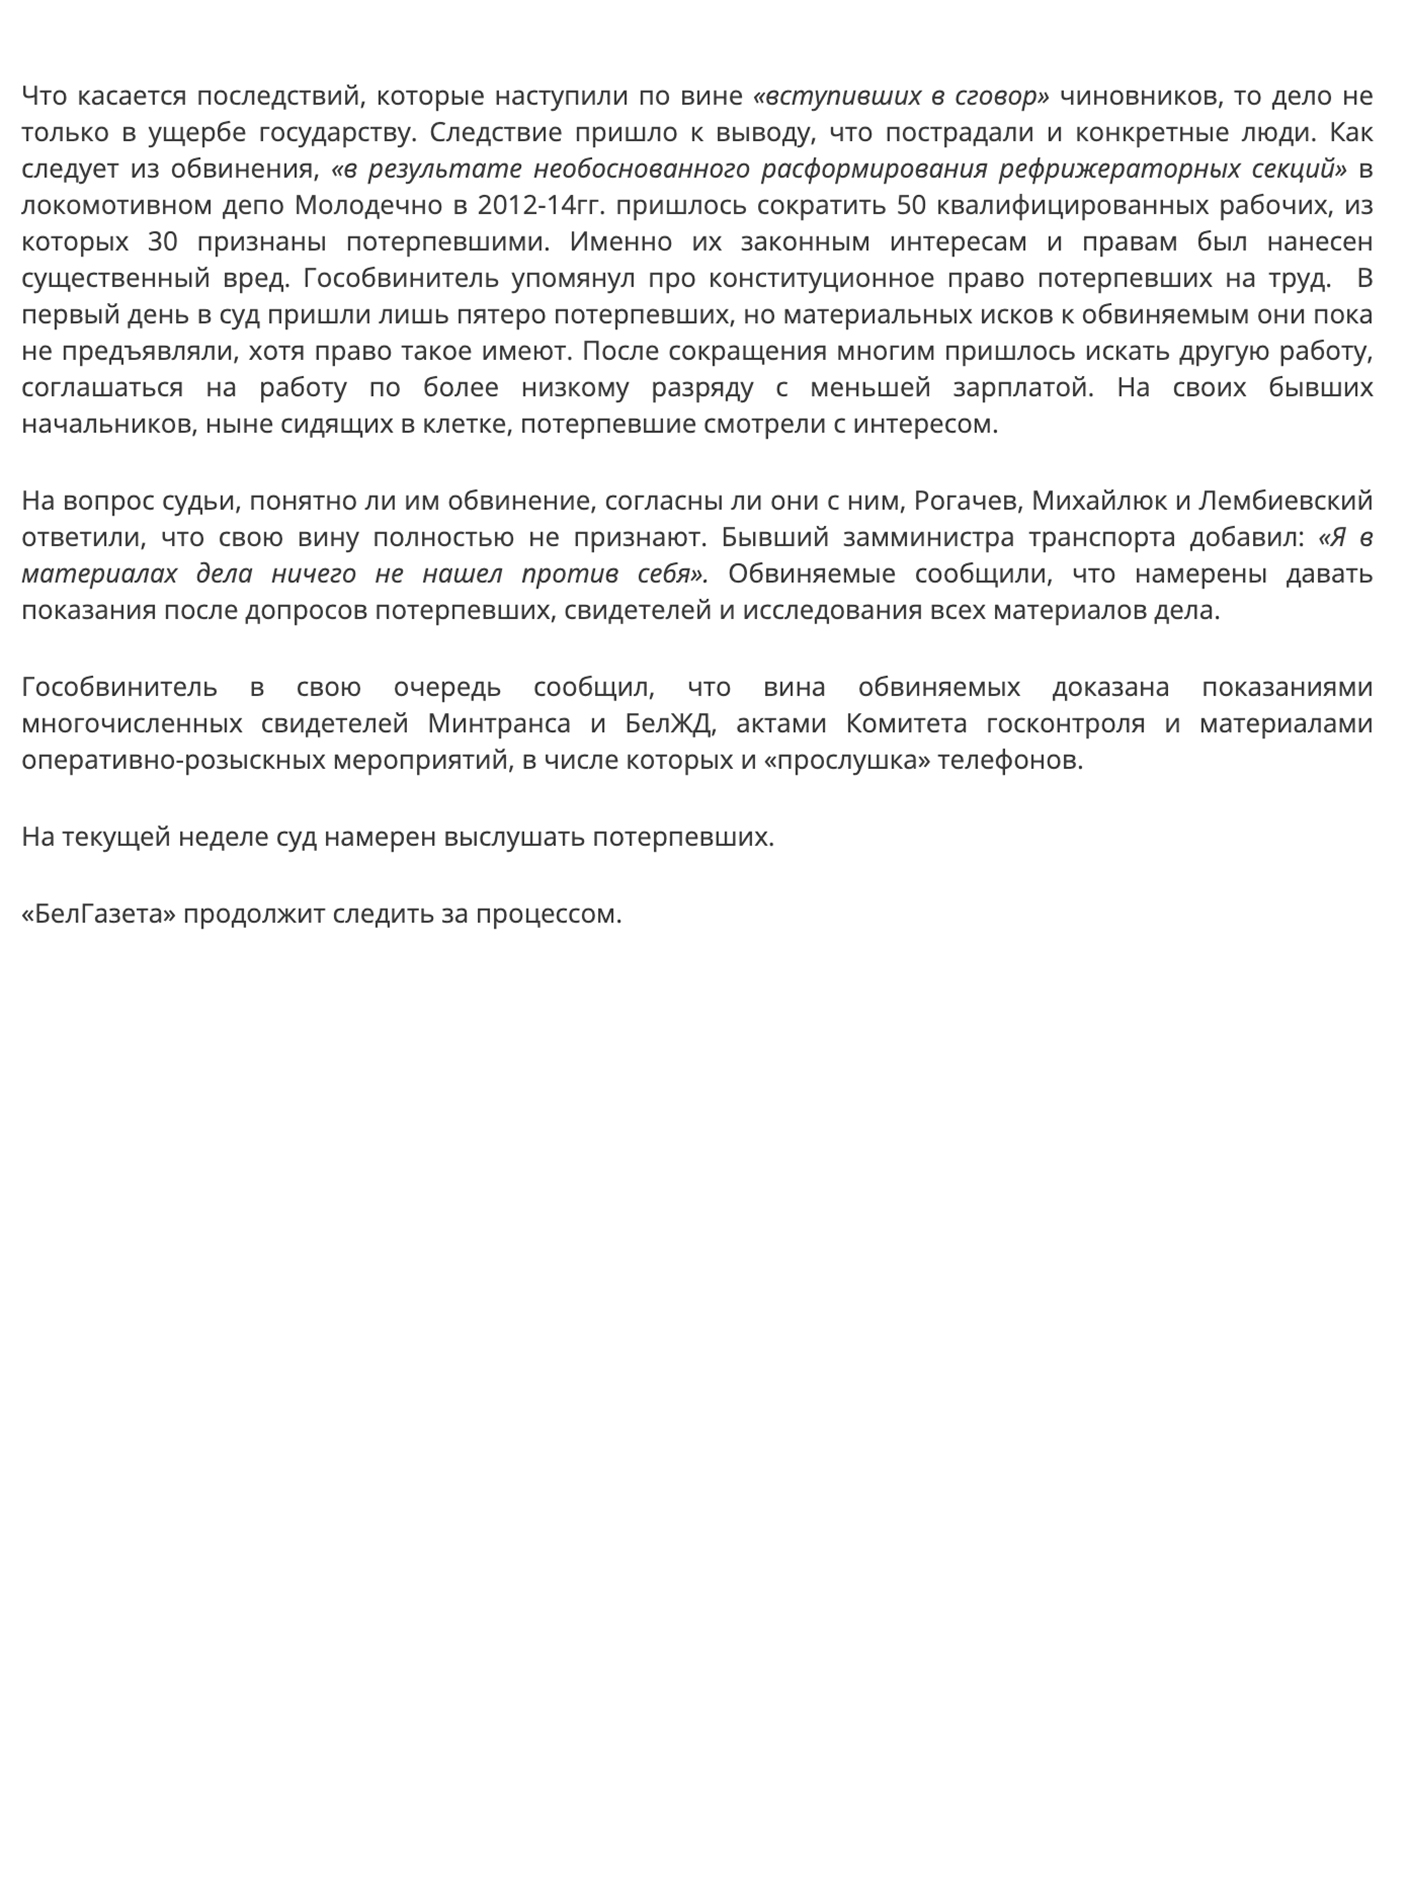 4 - Скриншот статьи о рассмотрении дела по коррупционным проявления на БЖД при участии компании «Сифуд-Сервис»